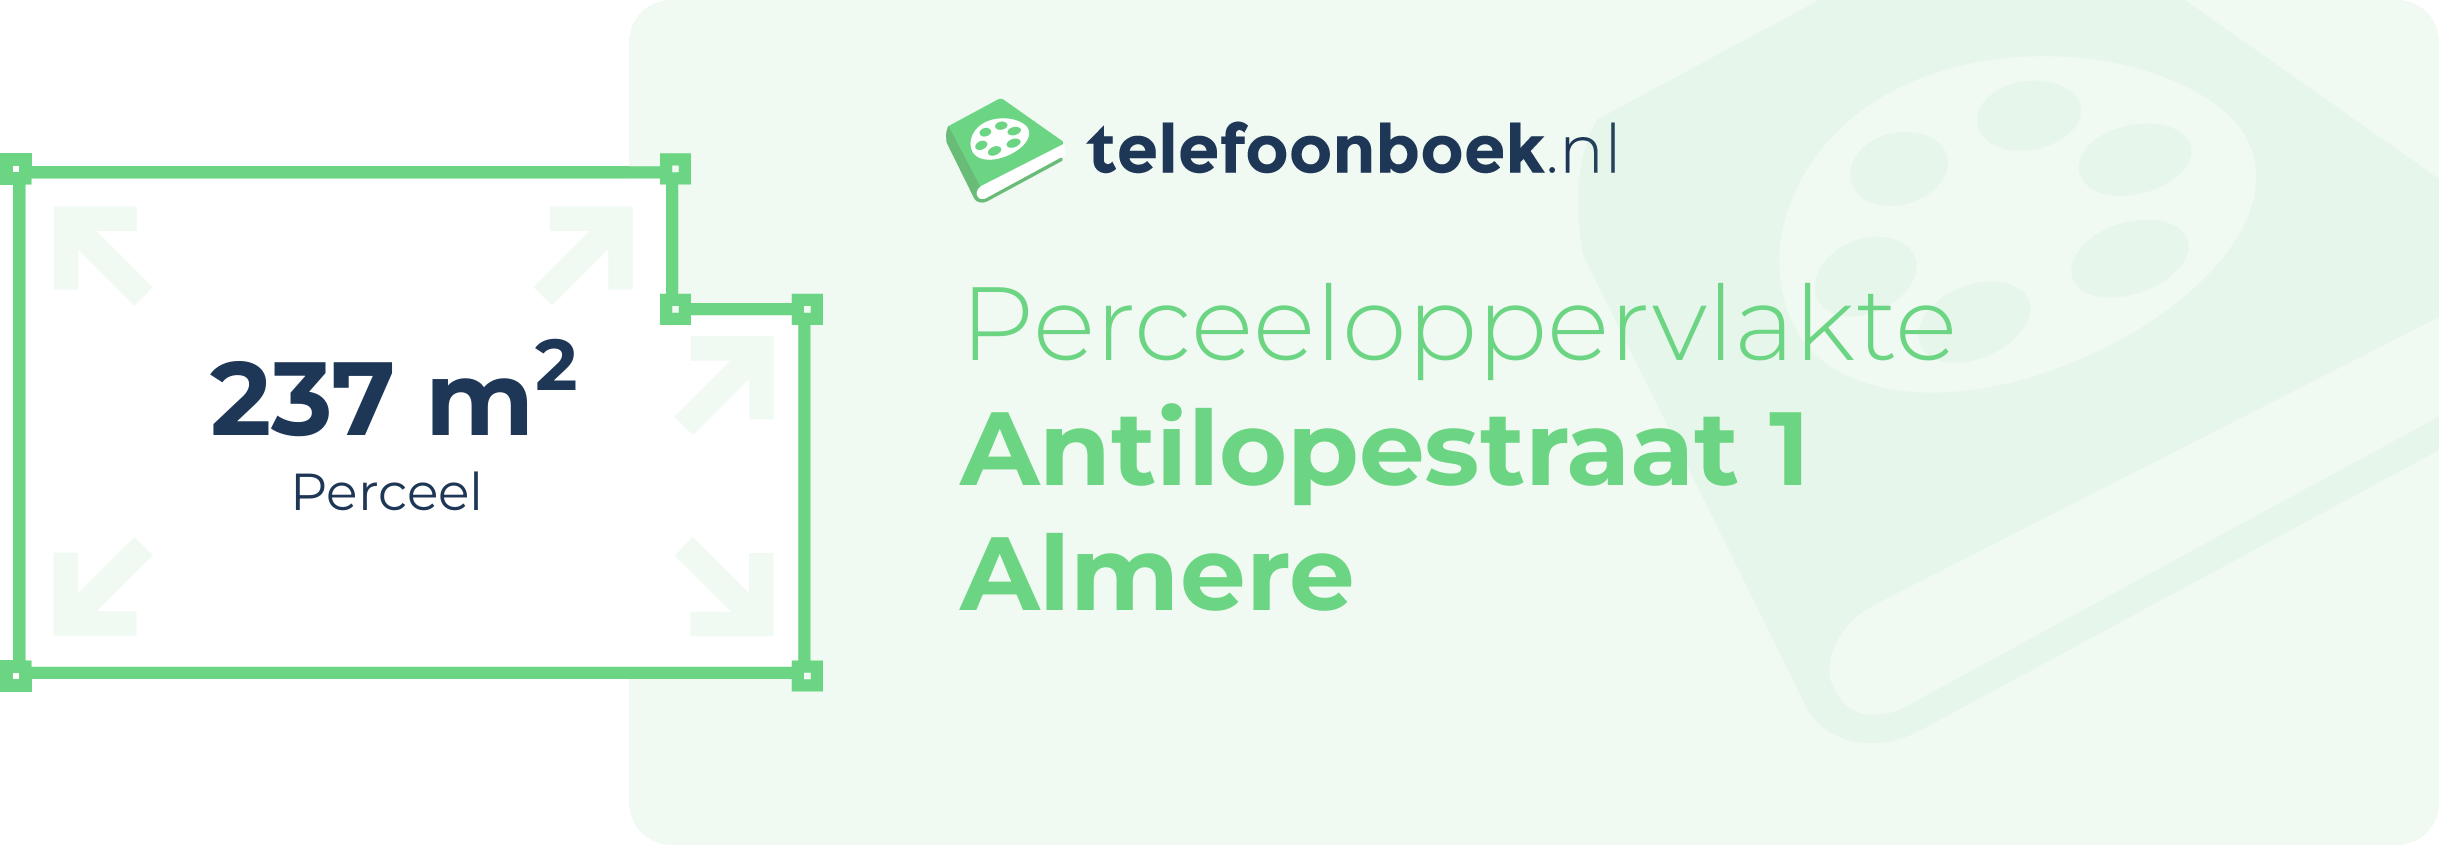 Perceeloppervlakte Antilopestraat 1 Almere